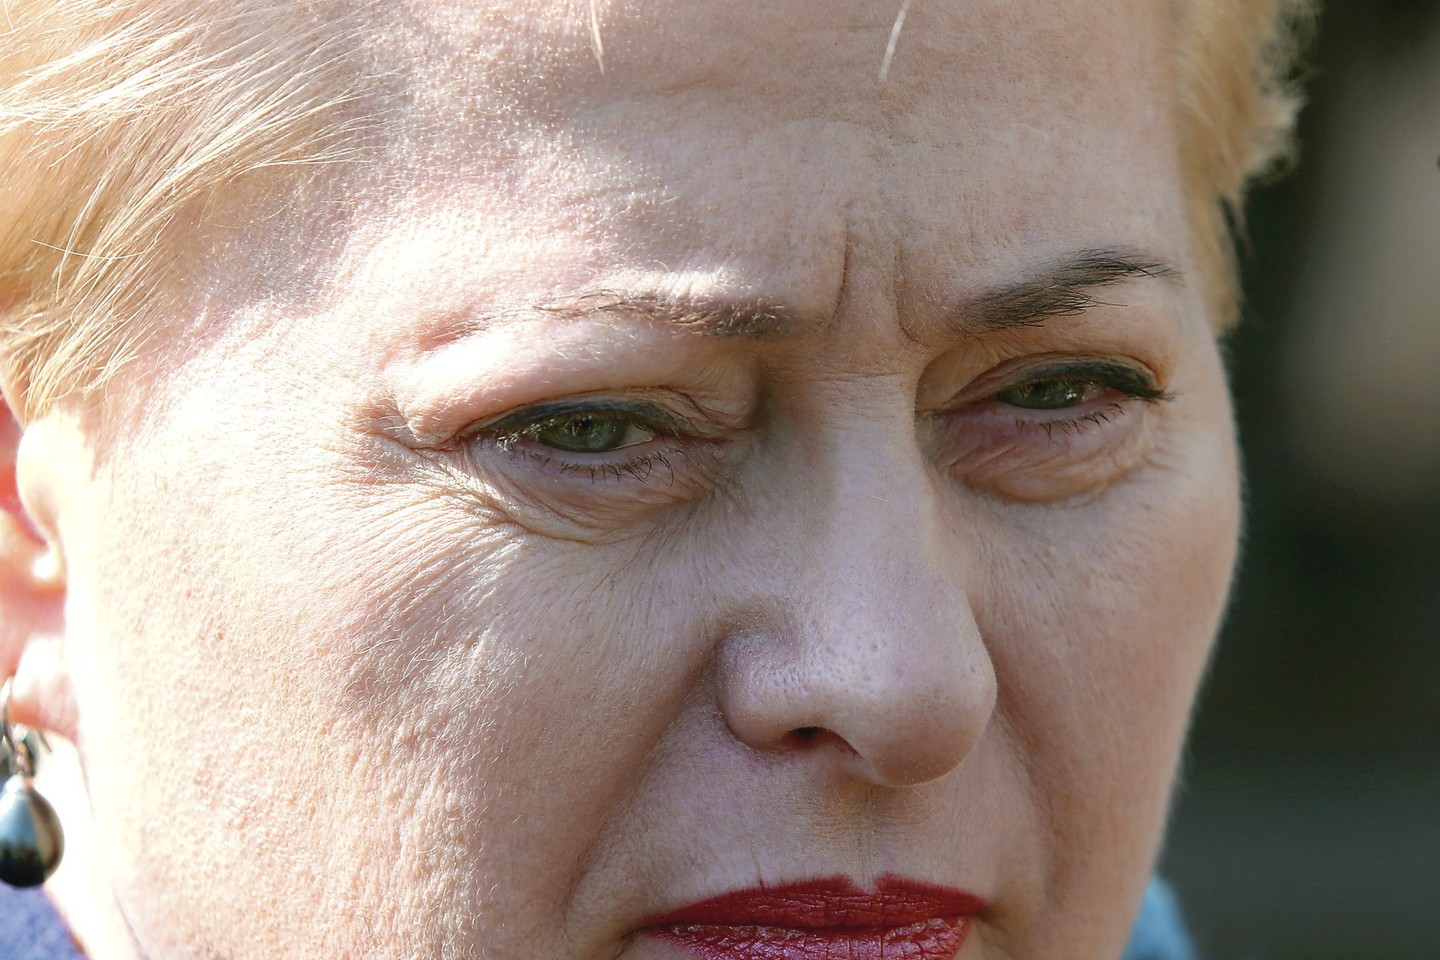 D.Grybauskaitės įsigytas sklypas patenka į Vilniaus rajono Pašilių žvyro telkinio parengtinai išžvalgytų išteklių plotą, esantį tiesiogiai prie detaliai išžvalgytų išteklių ploto.<br>R.Danisevičiaus nuotr.